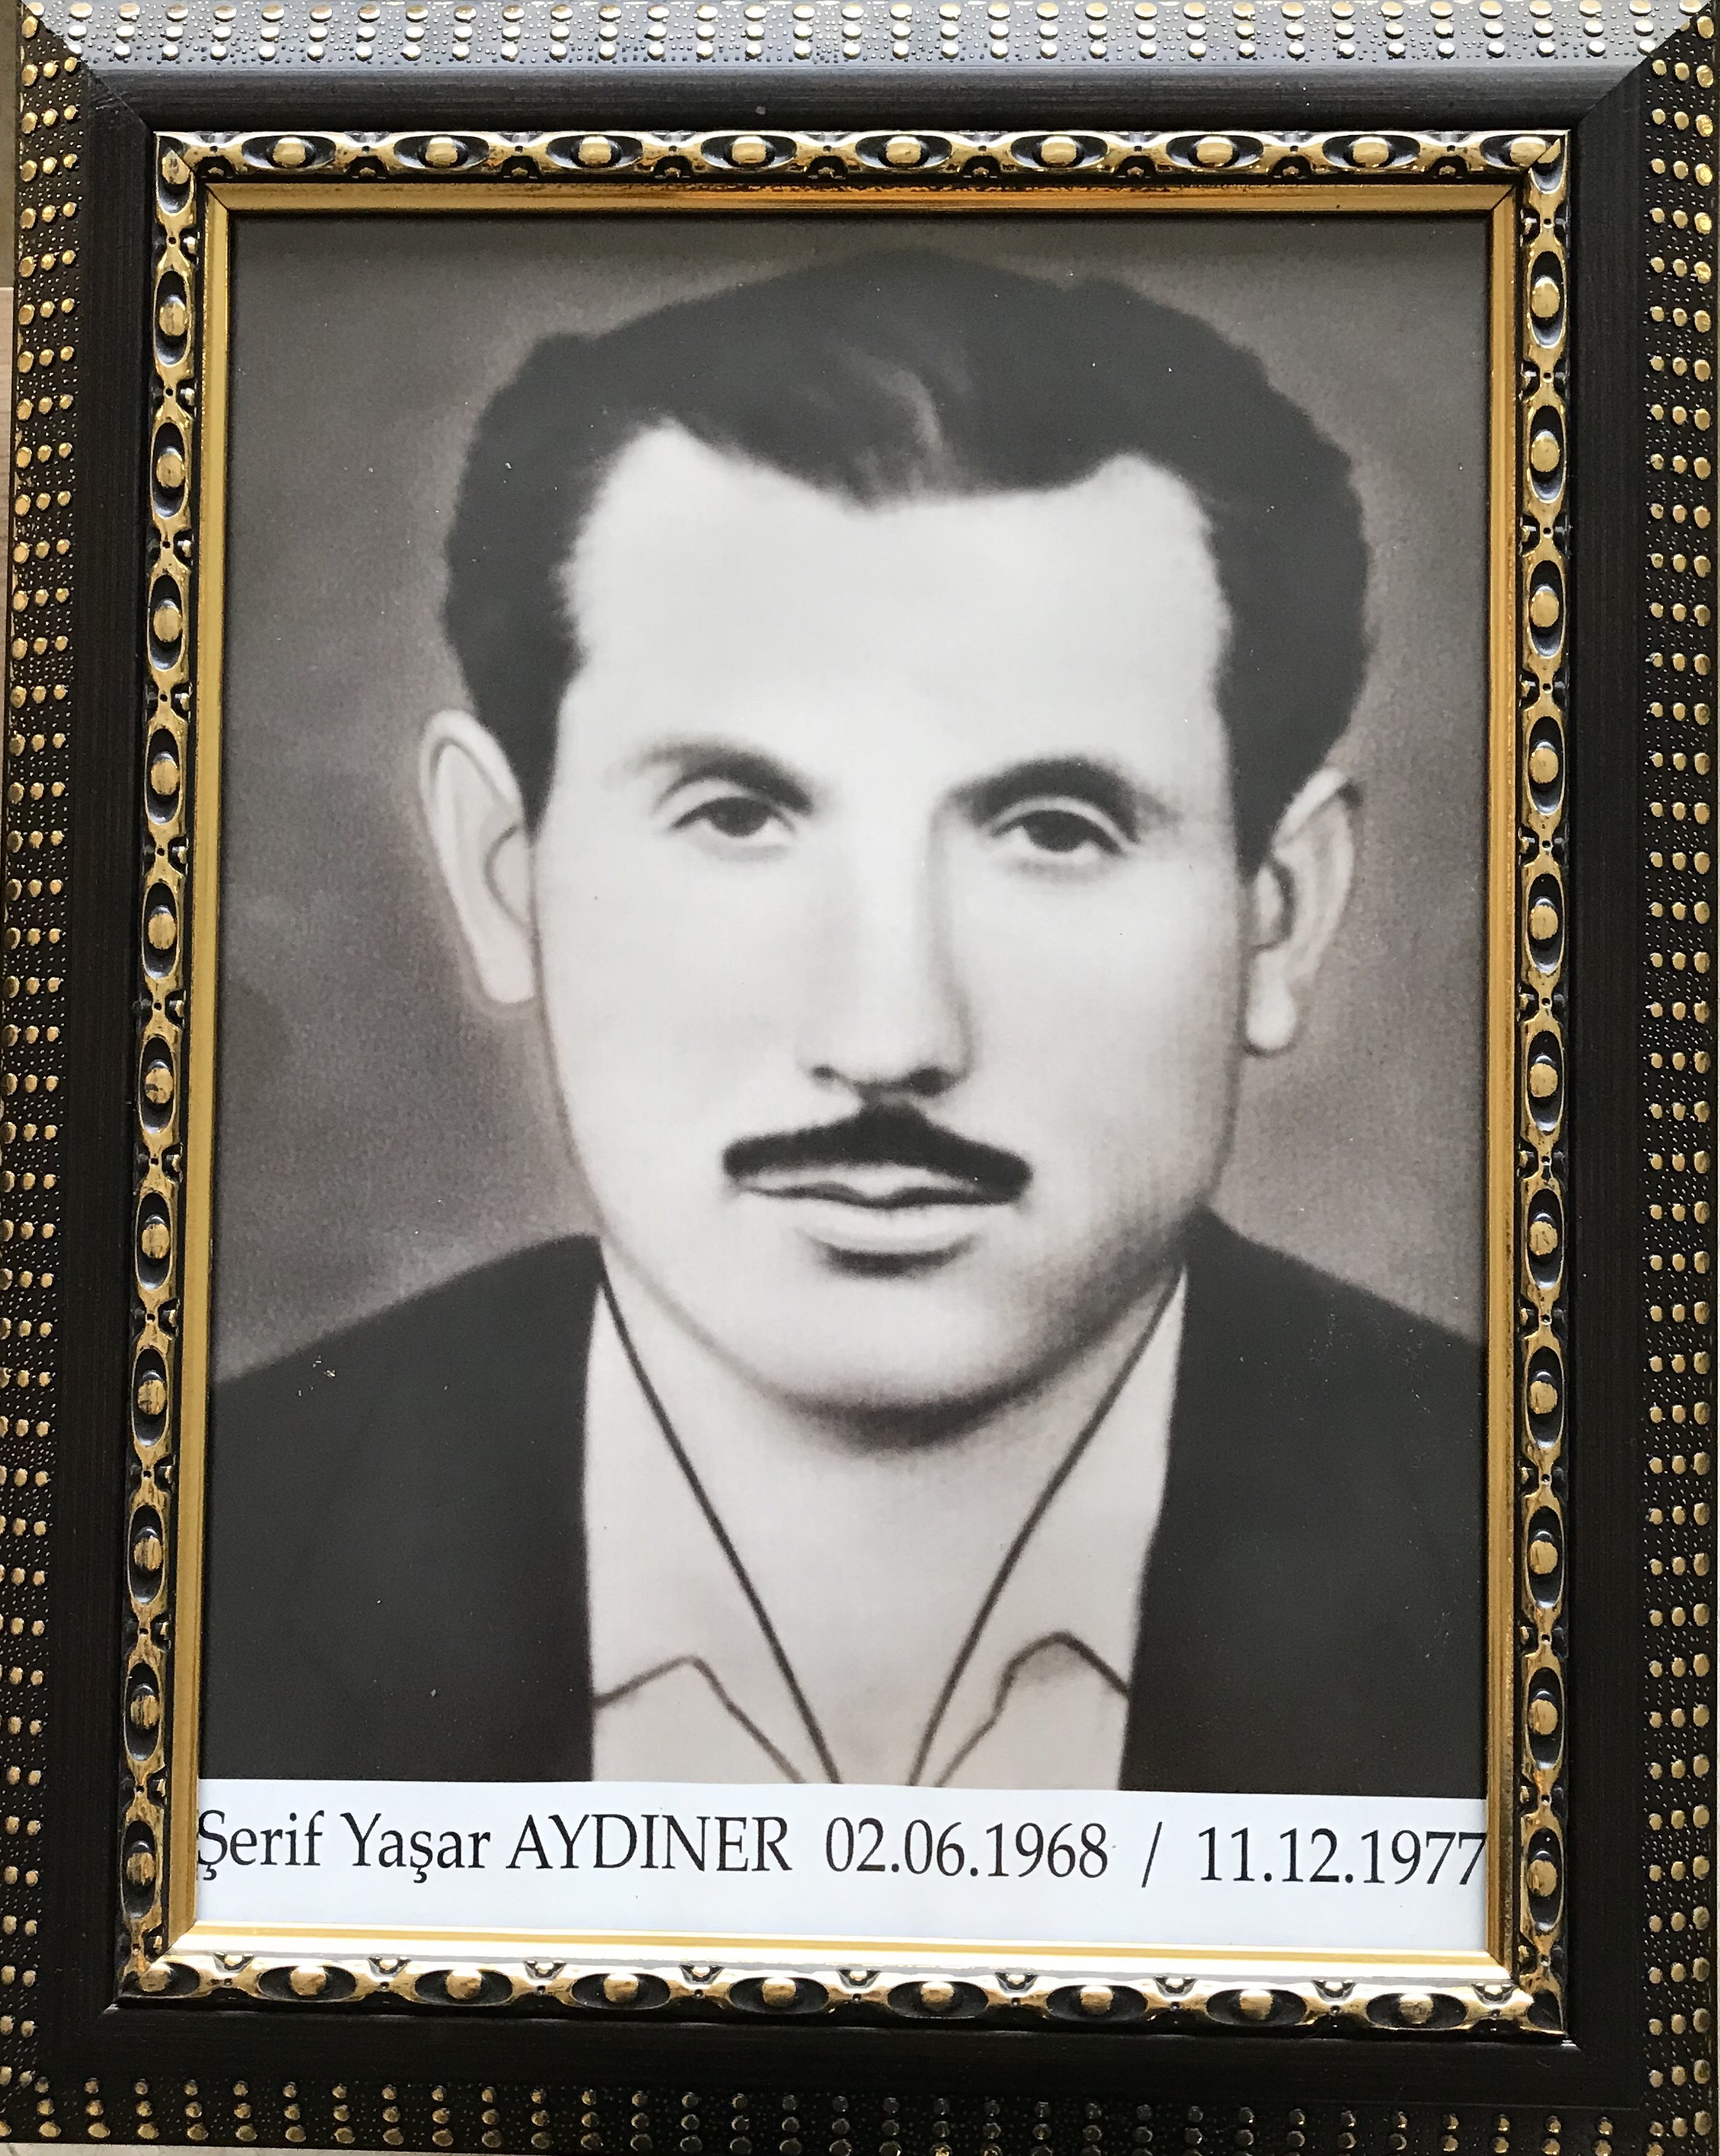 Serif Yasar AYDINER